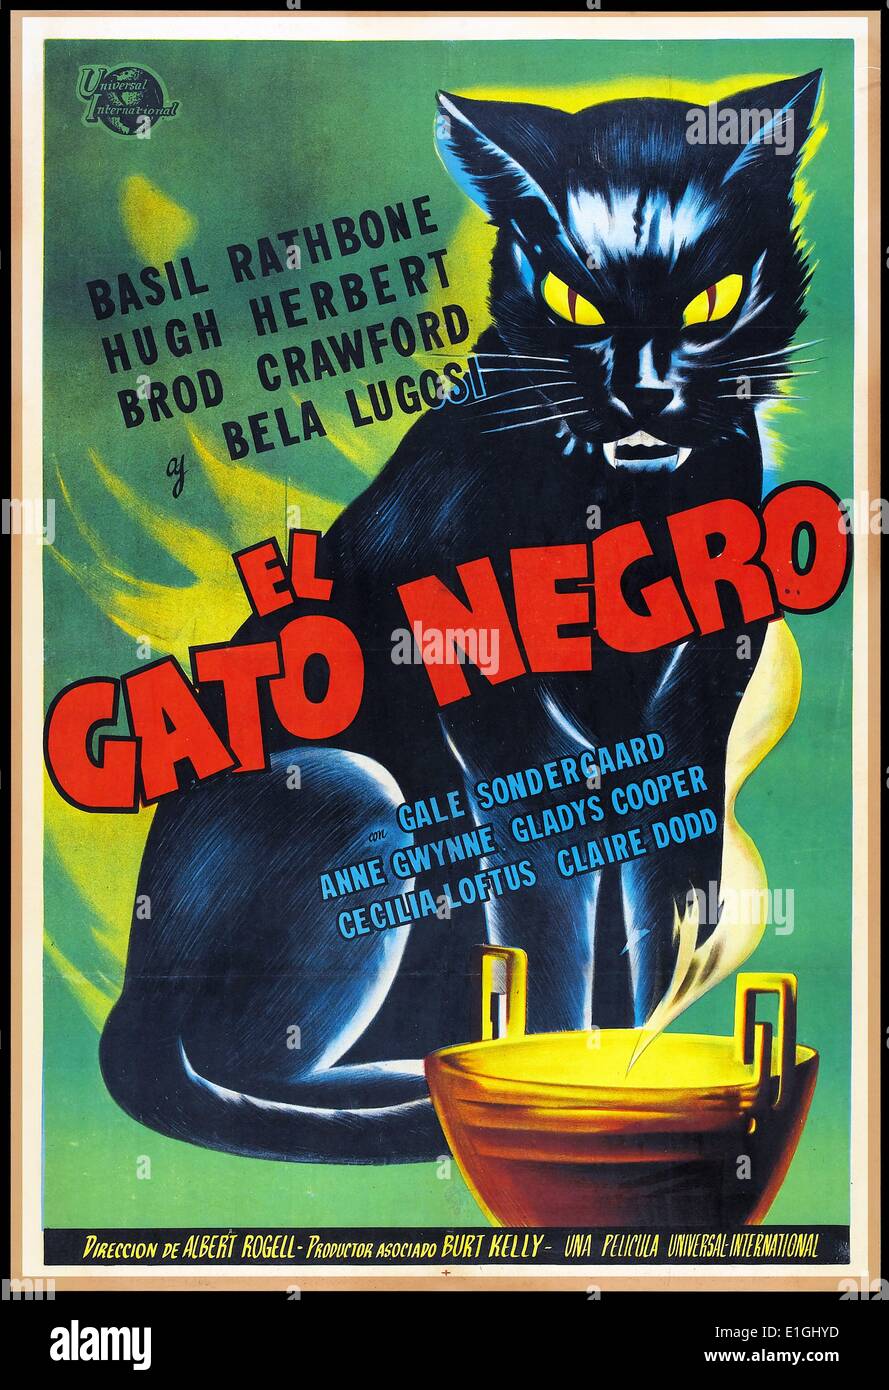 El Gato Negro Affiche De Film Espagnol Pour Le Chat Noir 1941 Un Film Base Sur La Nouvelle D Edgar Allan Poe La Comedie Horreur Film A Ete Realise Par Albert S Rogell Avec